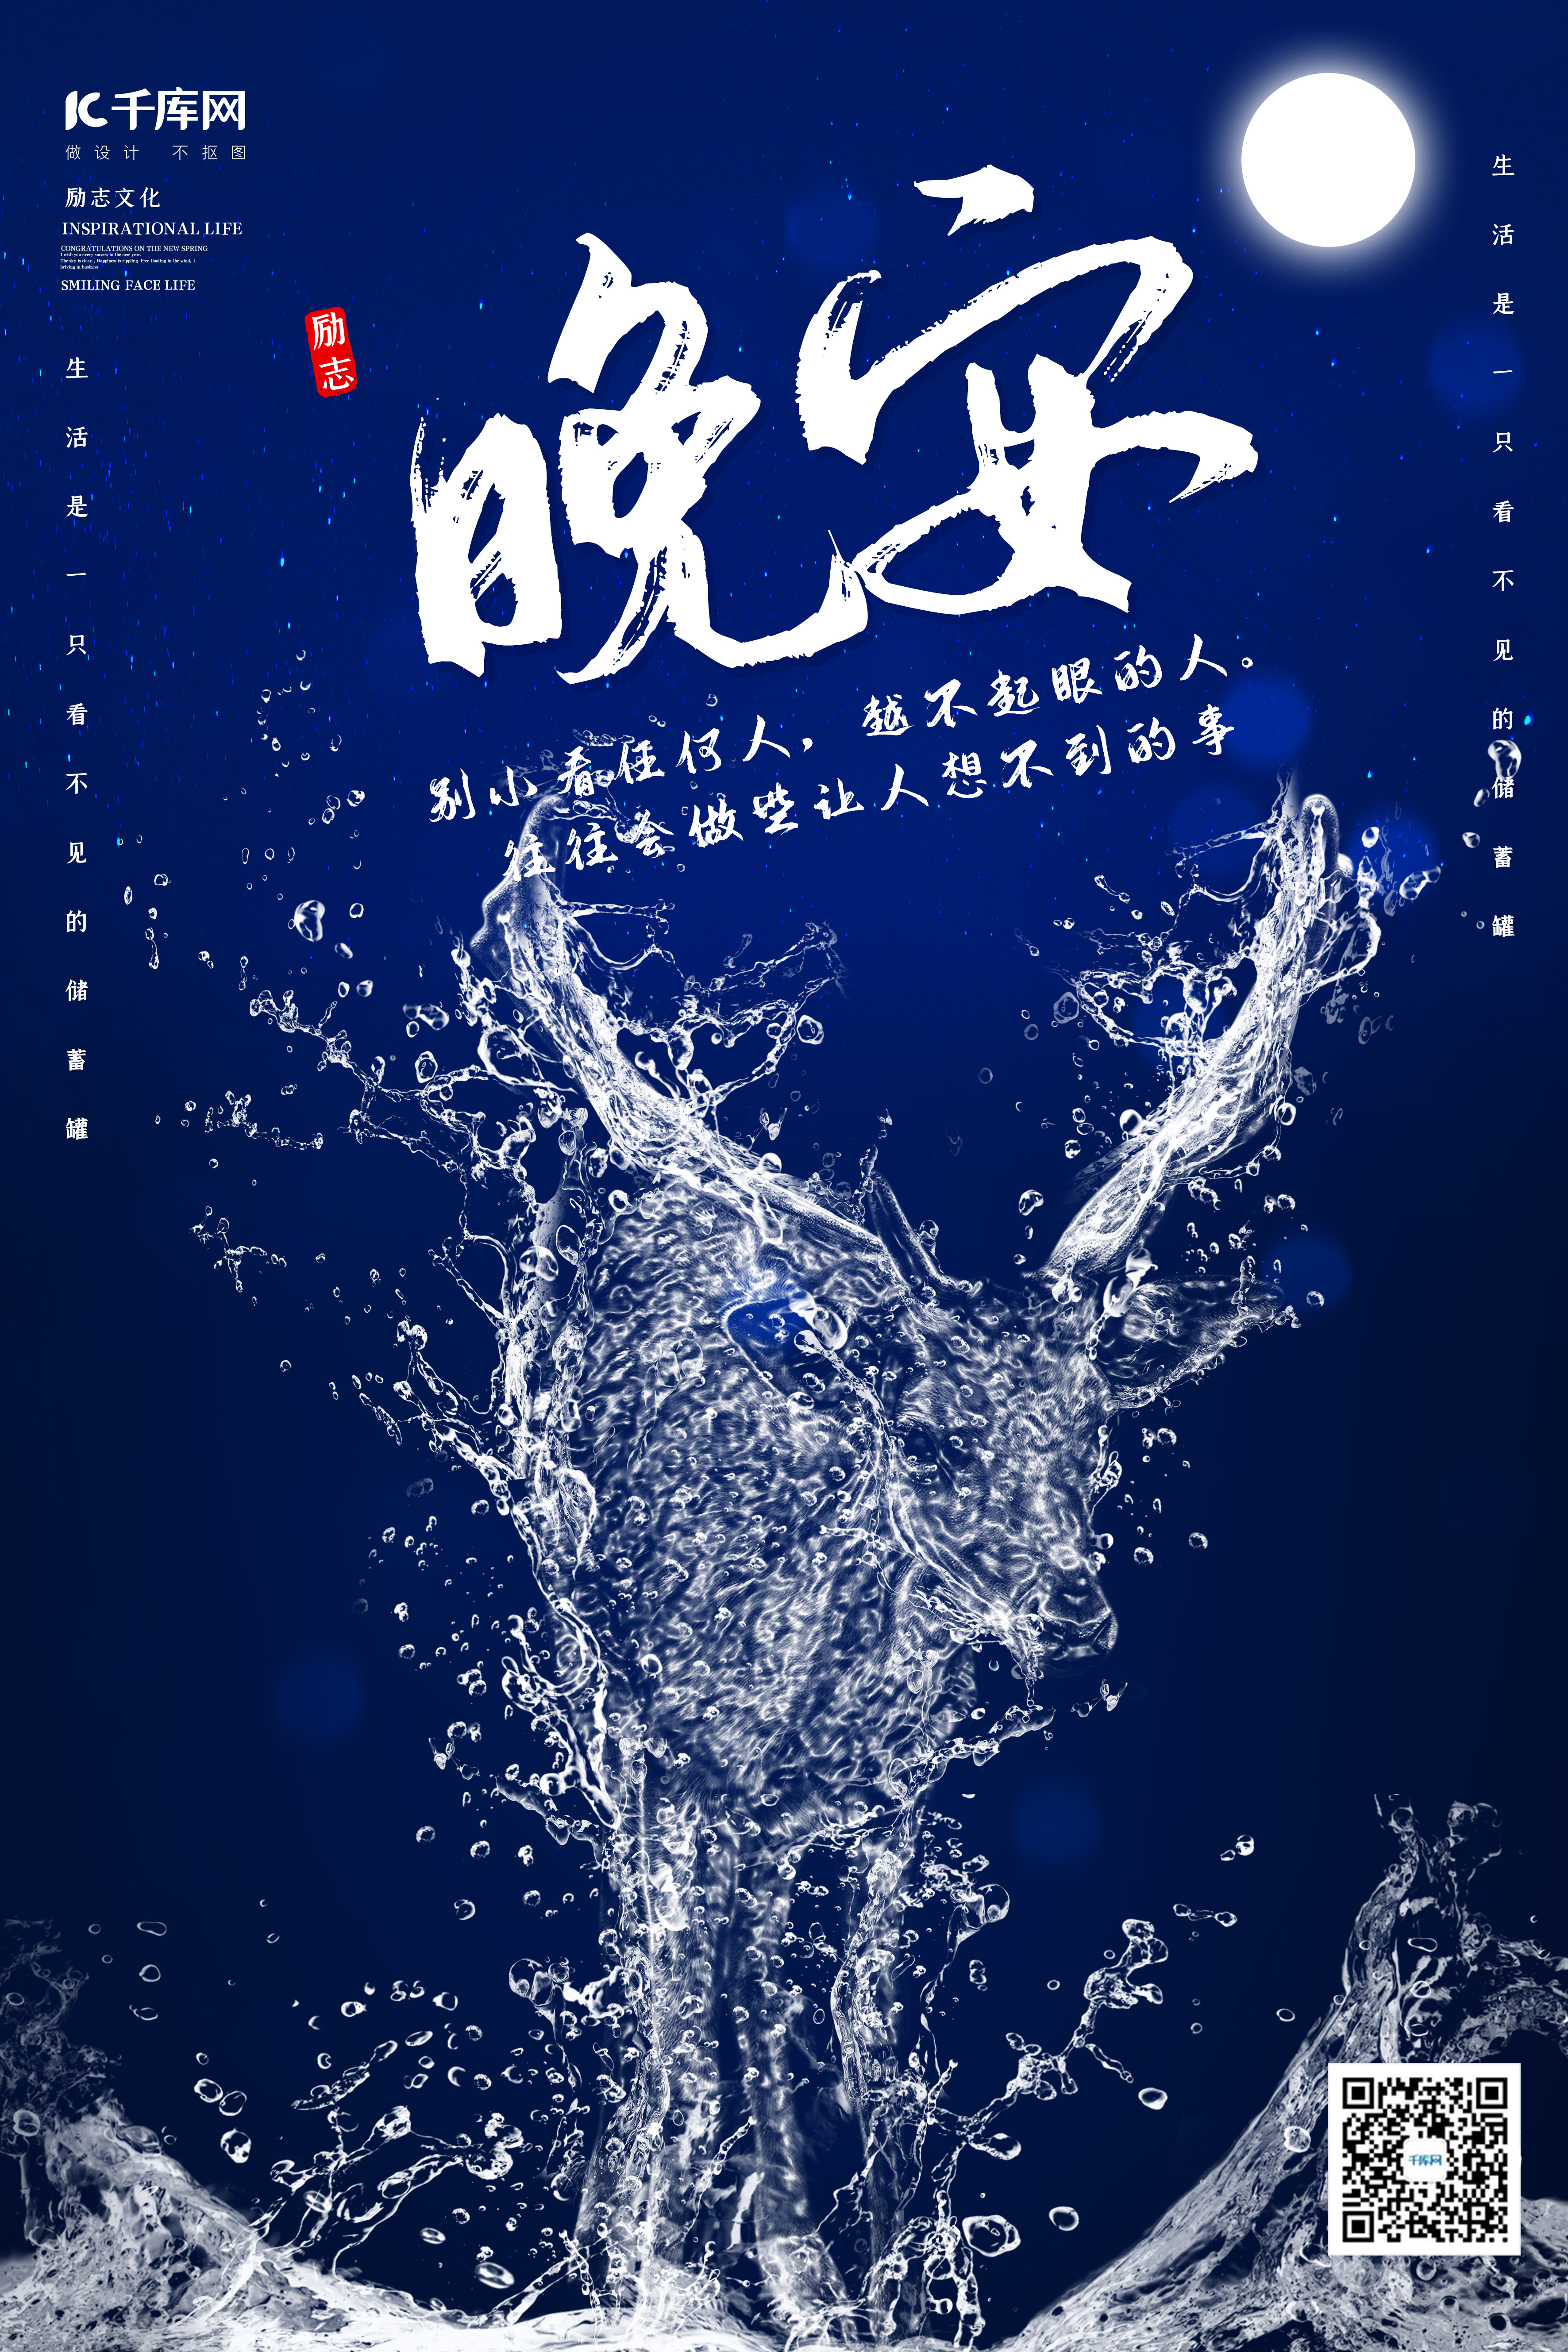 创意海洋之灵麋鹿晚安励志海报水形物语图片